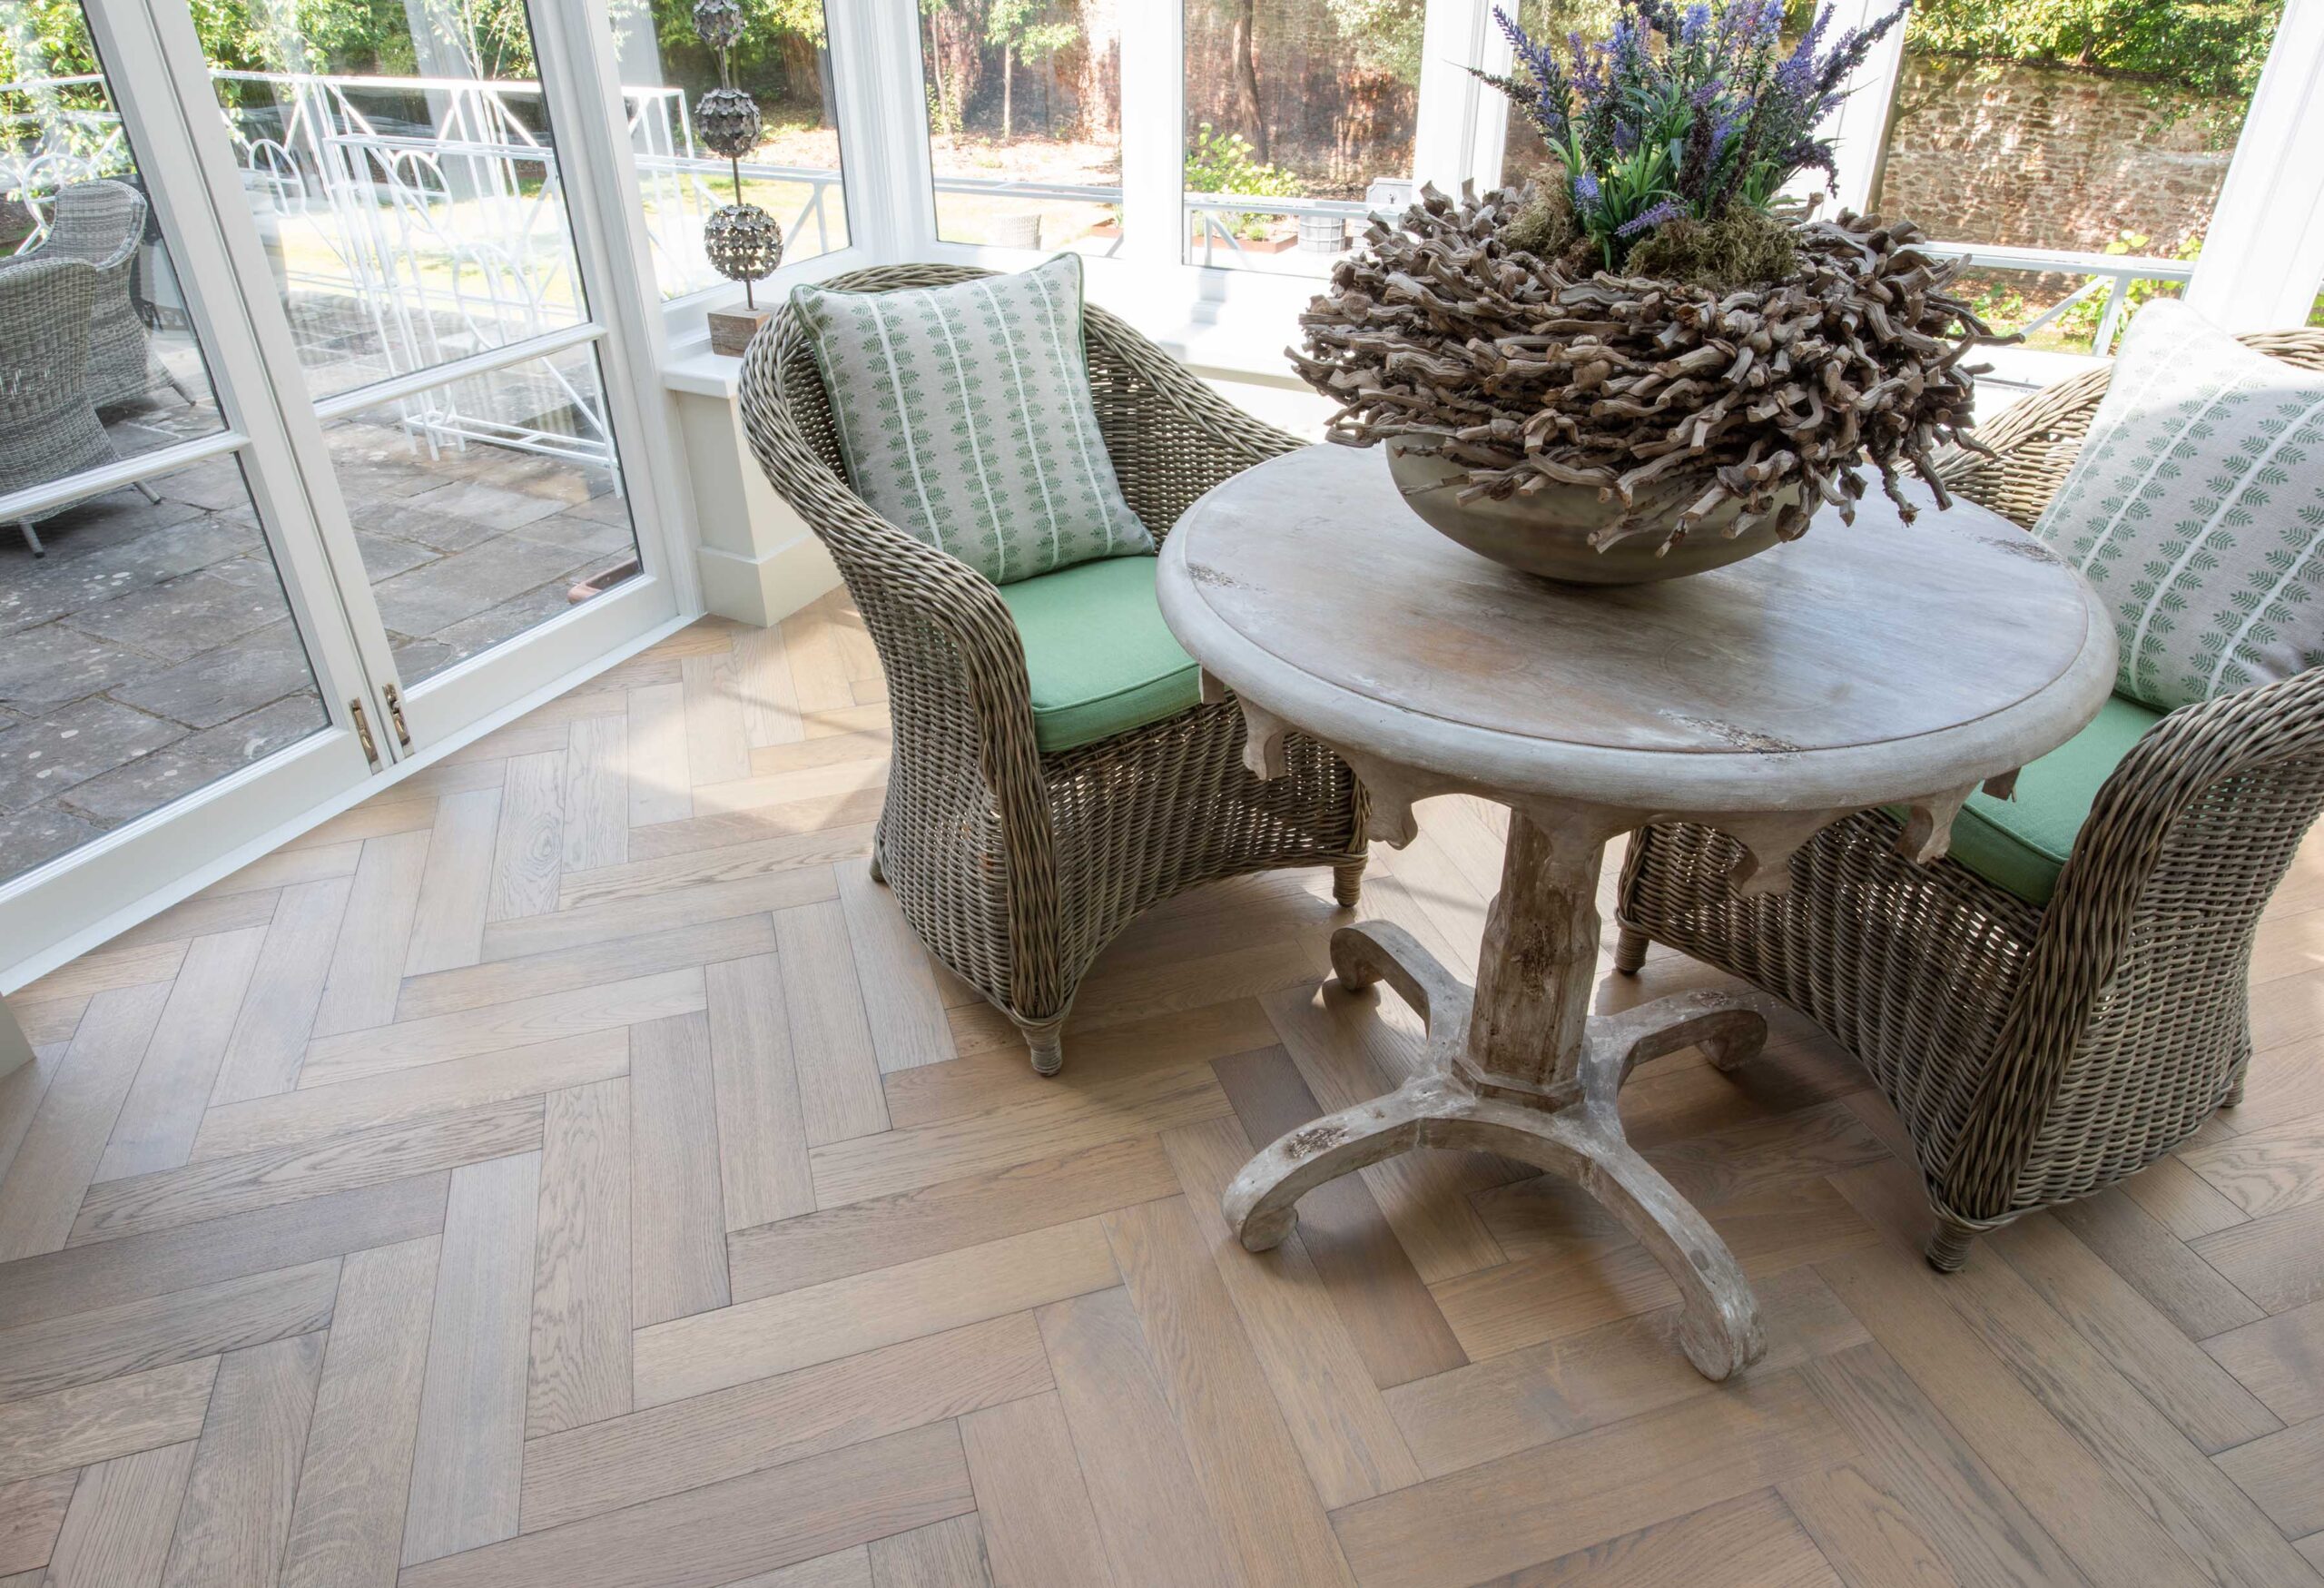 Vintage Grey engineered oak herringbone flooring in listed Clifton home